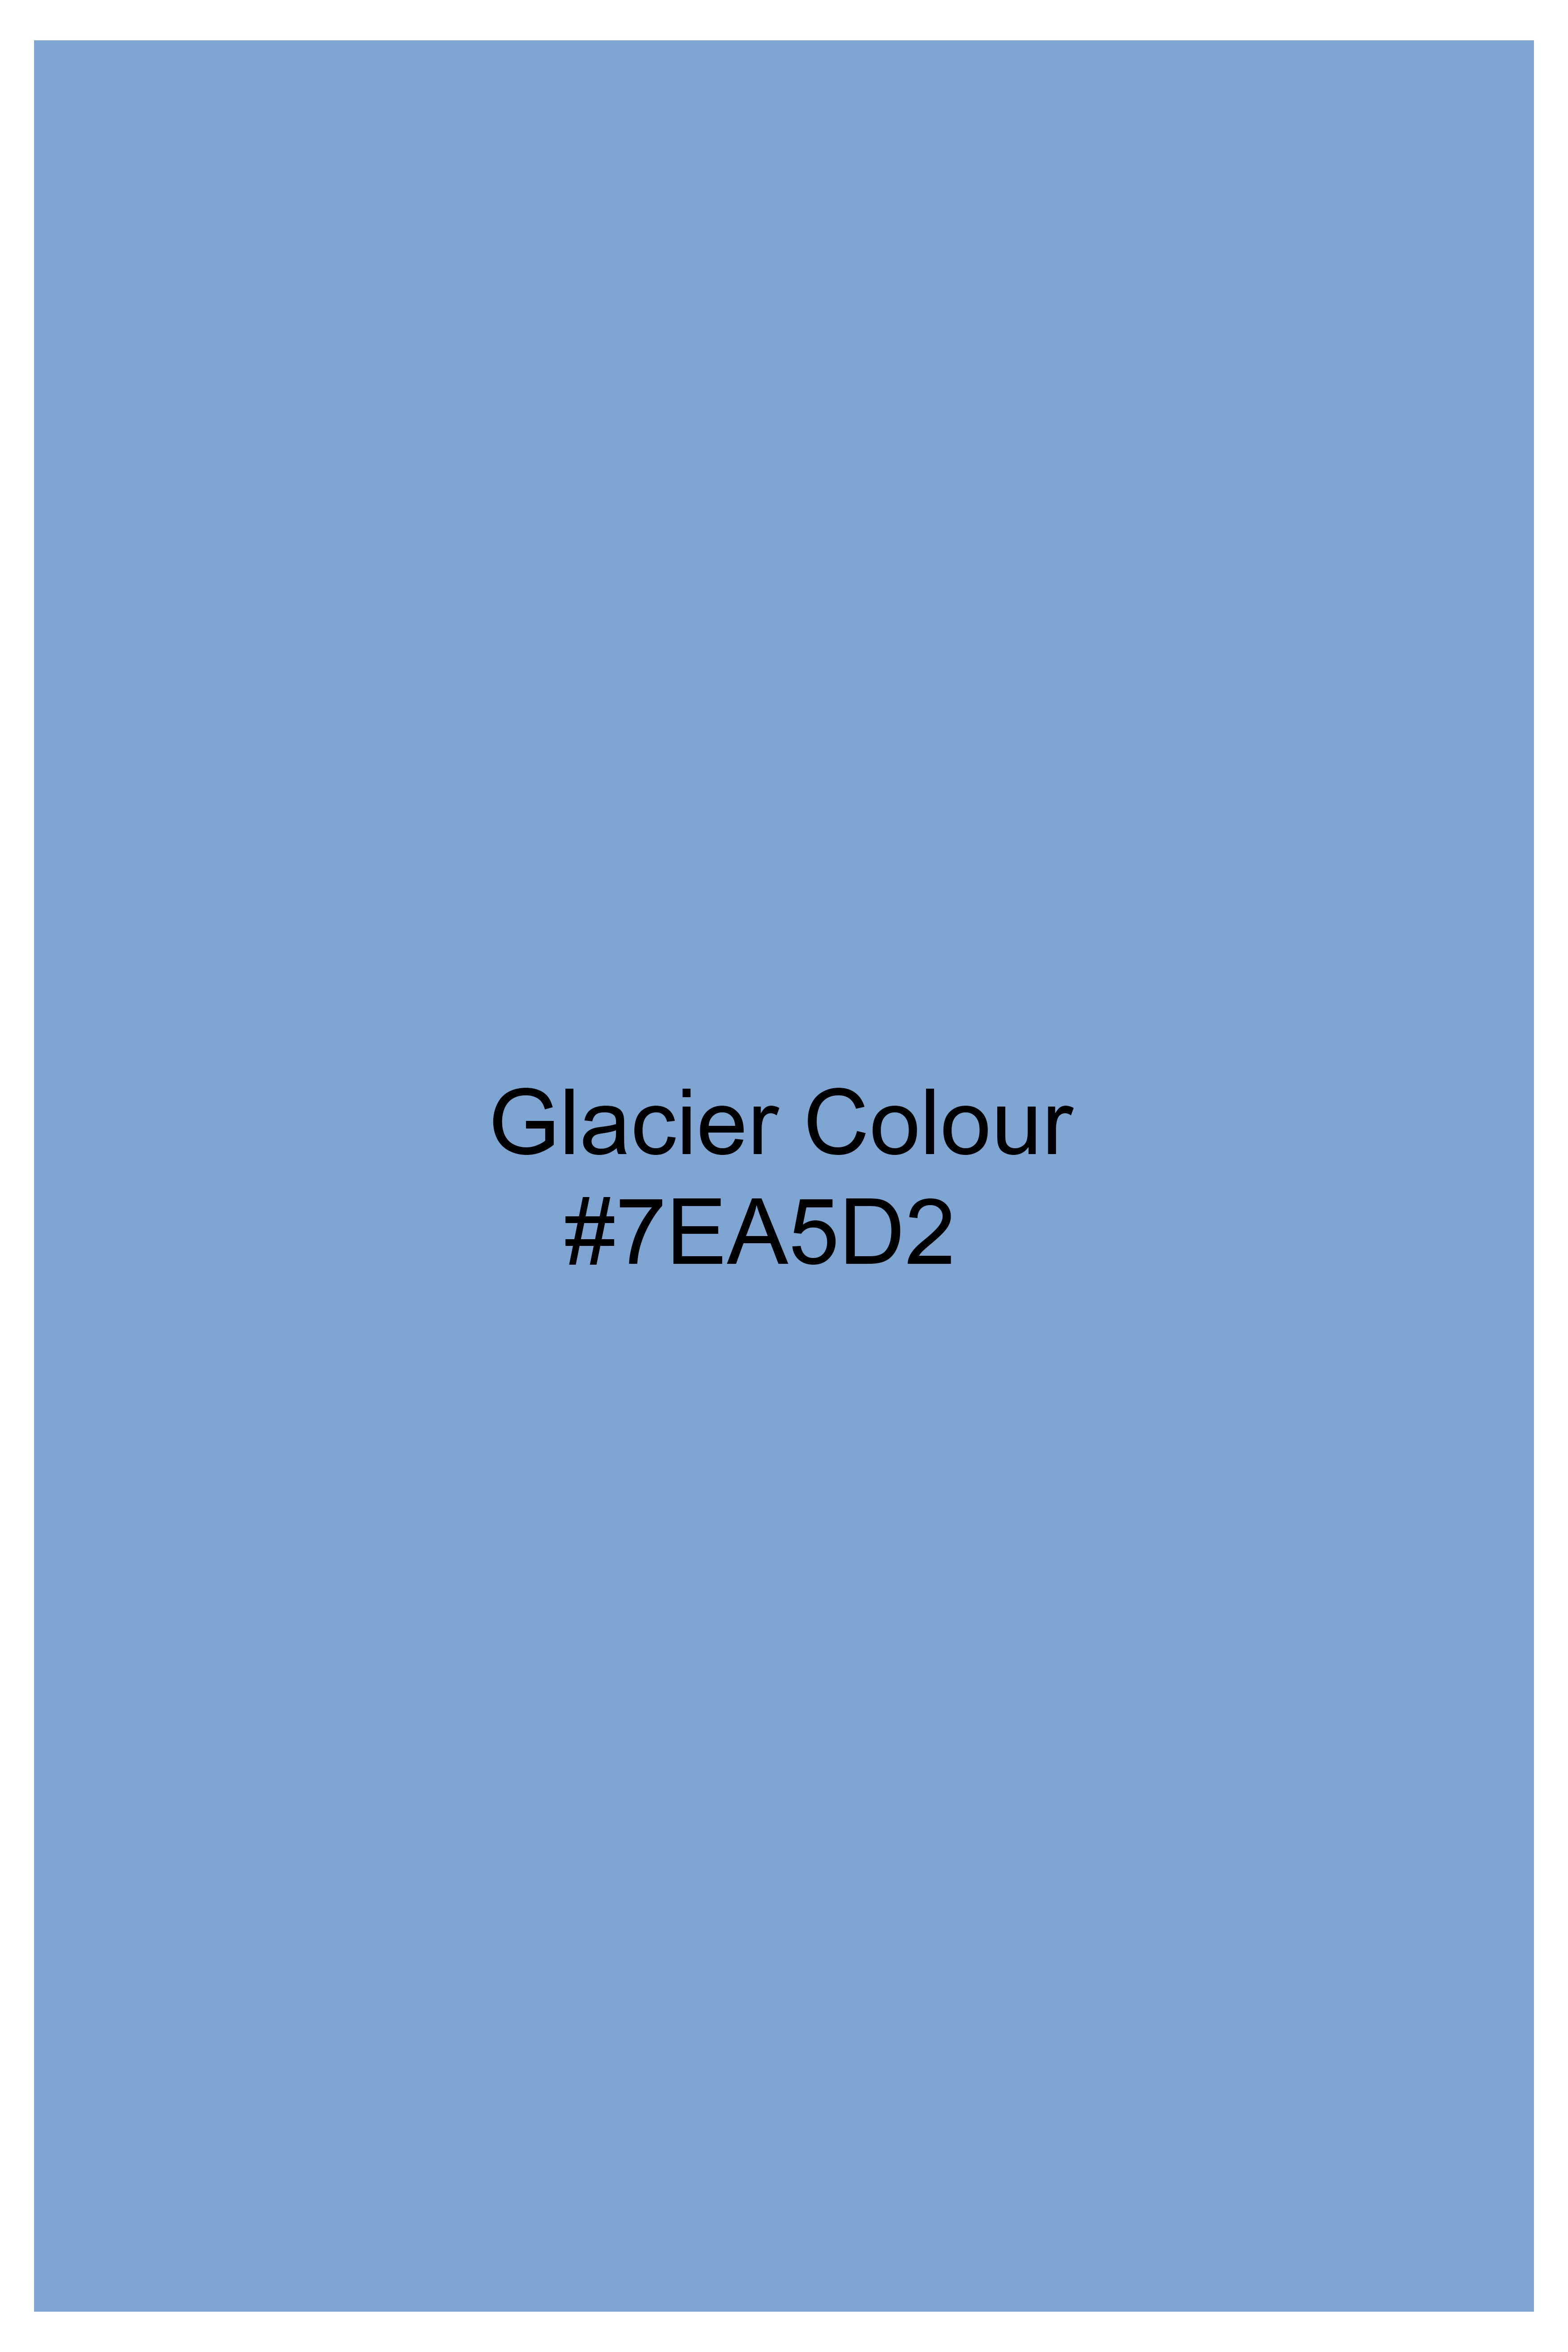 Glacier Blue Chambray Shorts SR372-28, SR372-30, SR372-32, SR372-34, SR372-36, SR372-38, SR372-40, SR372-42, SR372-44